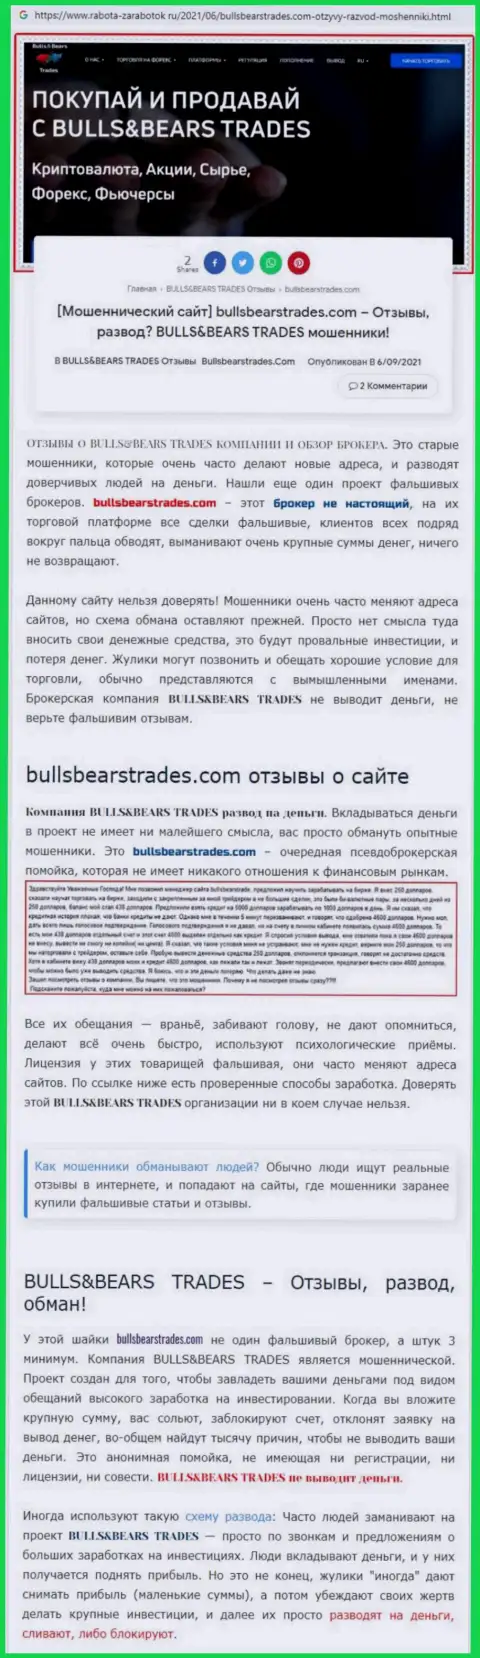 Обзор неправомерно действующей организации BullsBearsTrades Com о том, как обувает реальных клиентов